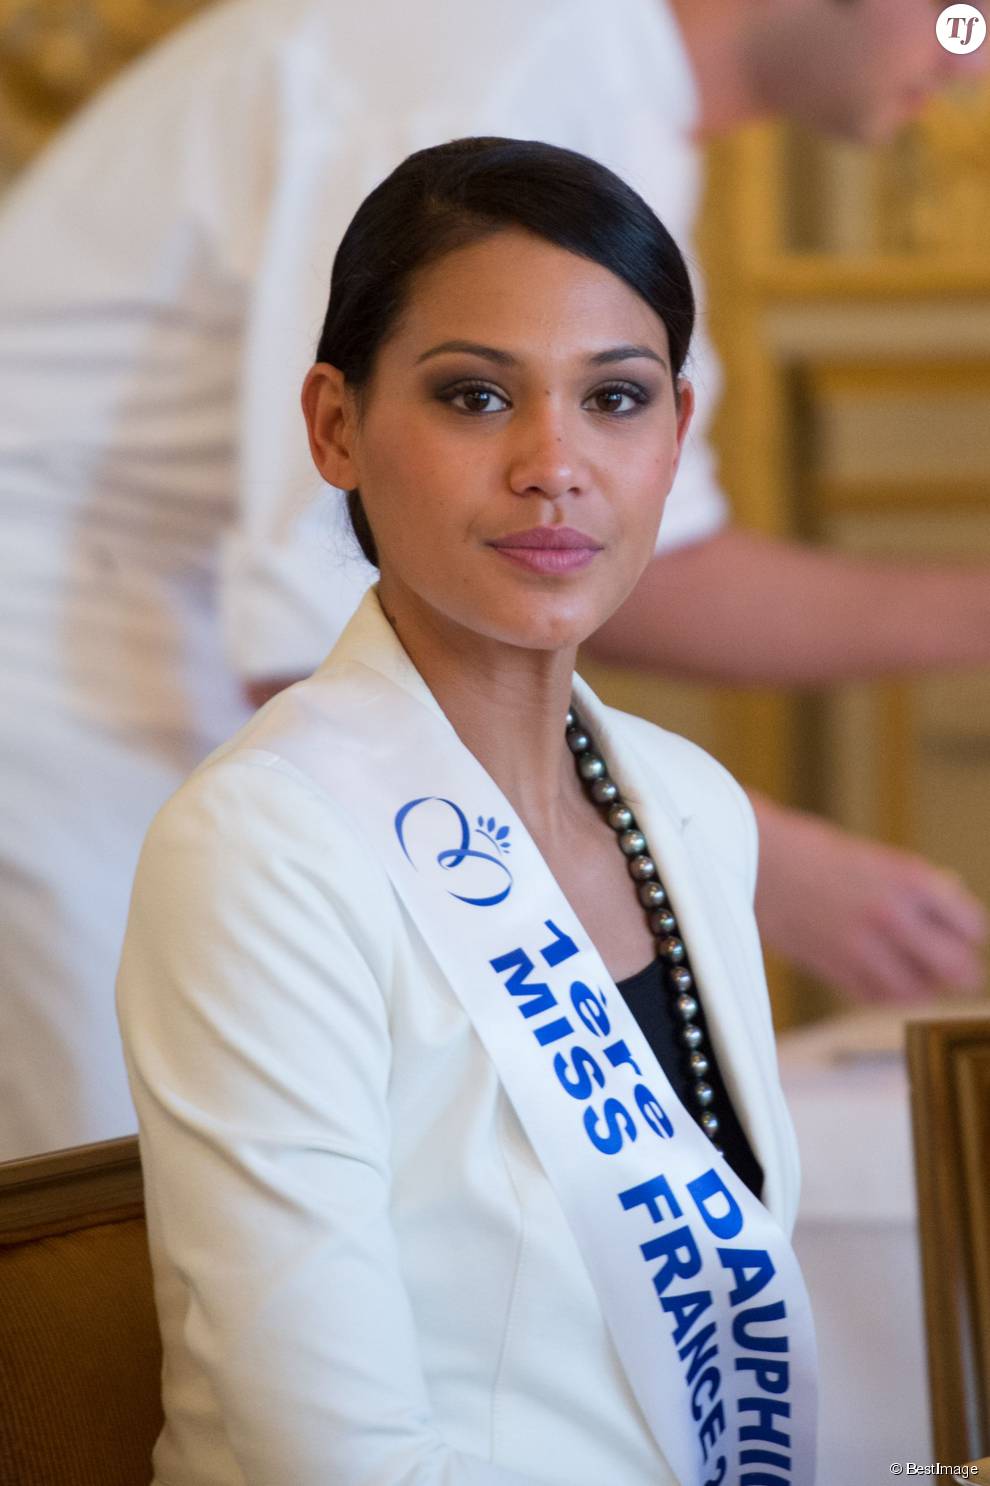  Semi-Exclusif - Hinarere Taputu (Miss Tahiti - 1ère Dauphine 2015) - Anniversaire surprise ( 20 ans) de Miss France 2015, Camille Cerf et de sa soeur jumelle Mathilde au Shangri-La Hotel Paris. Le 9 Décembre 2014.  